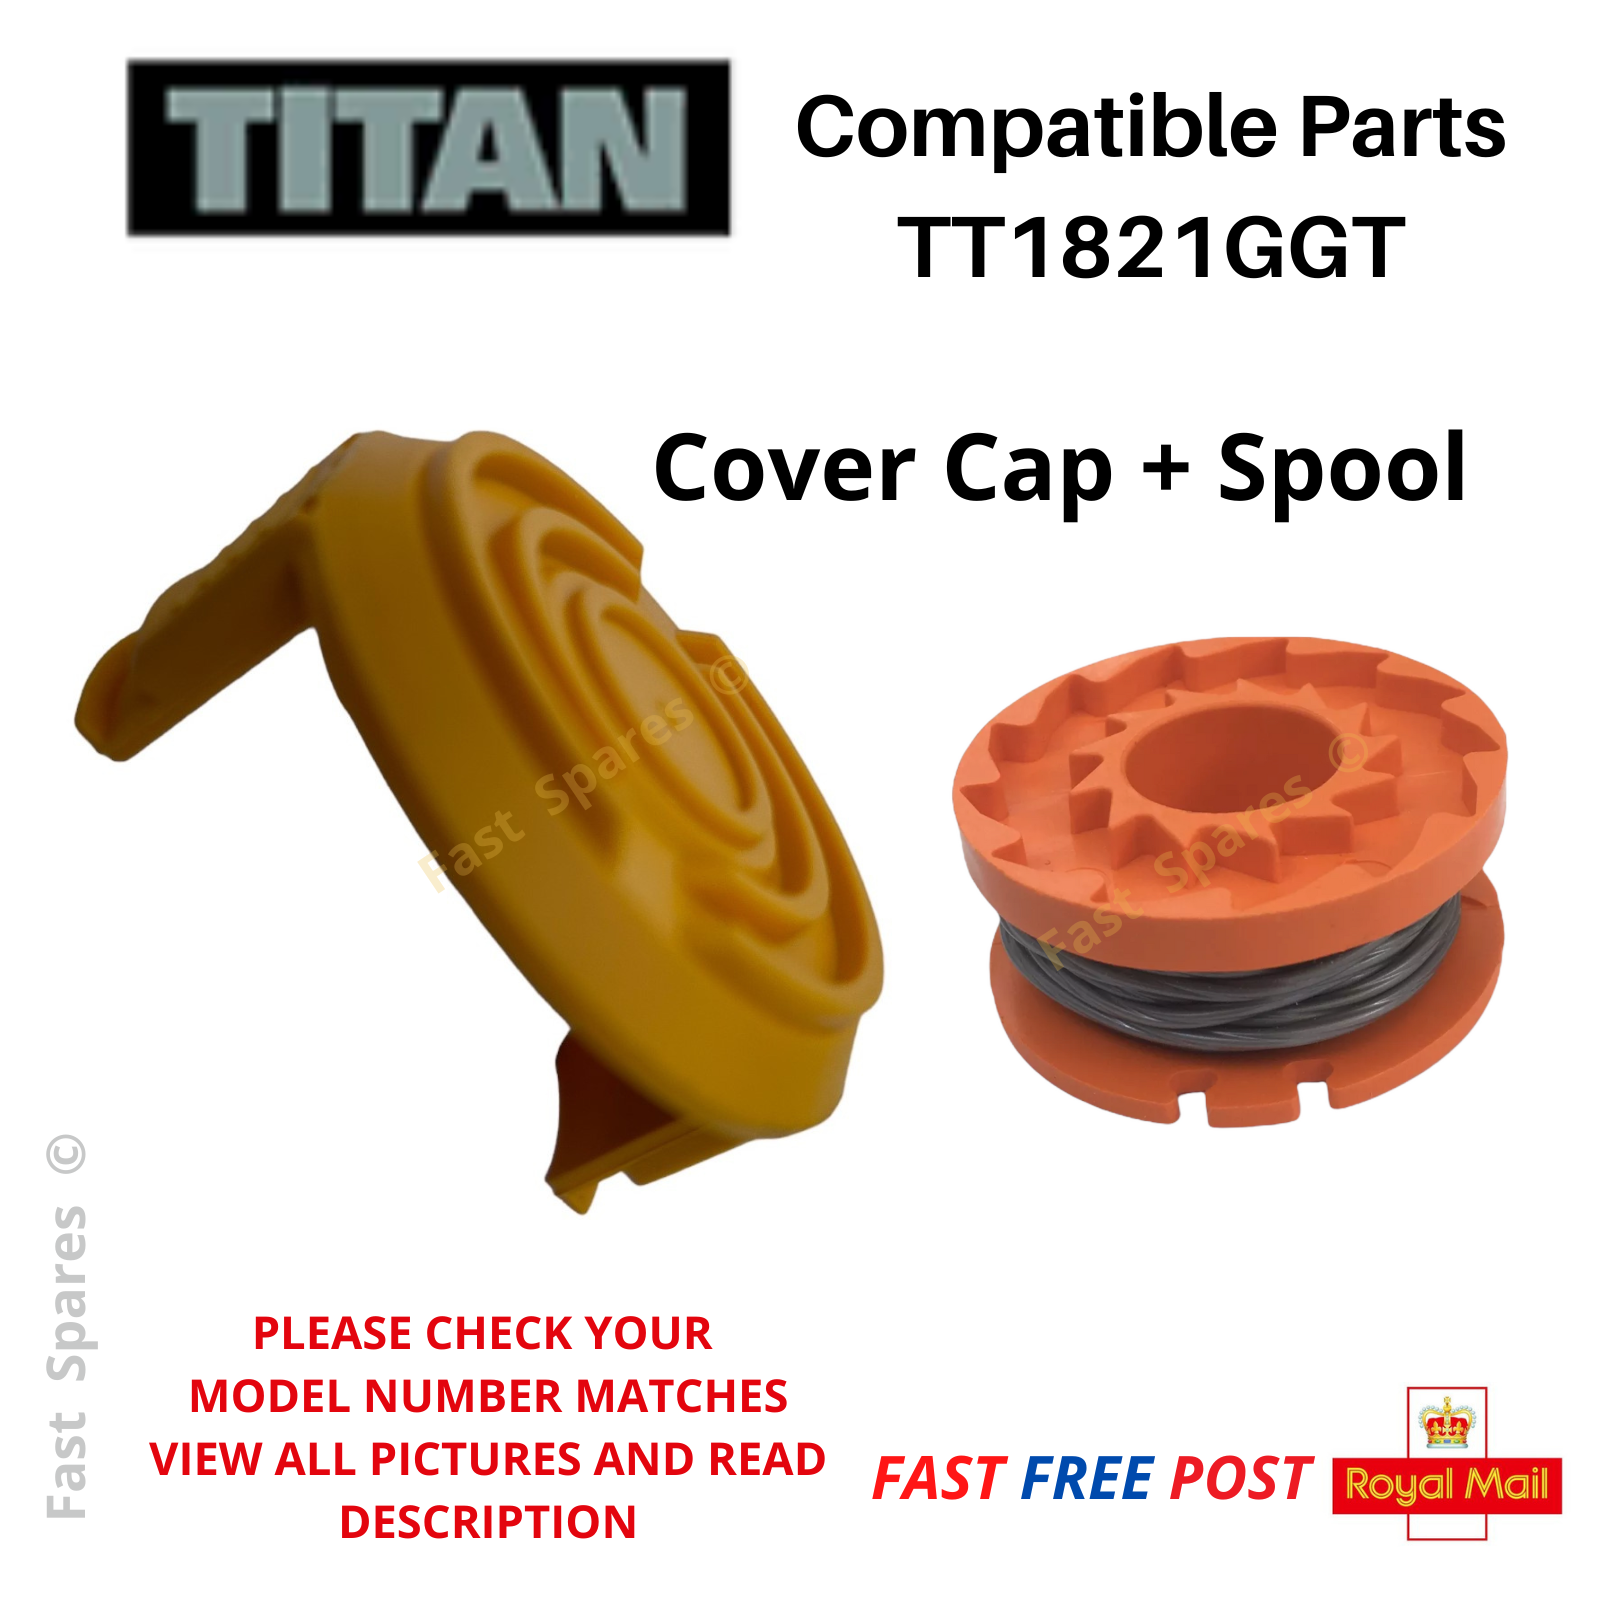 Titan Screwfix TT1821GGT Spool cover cap and spool 